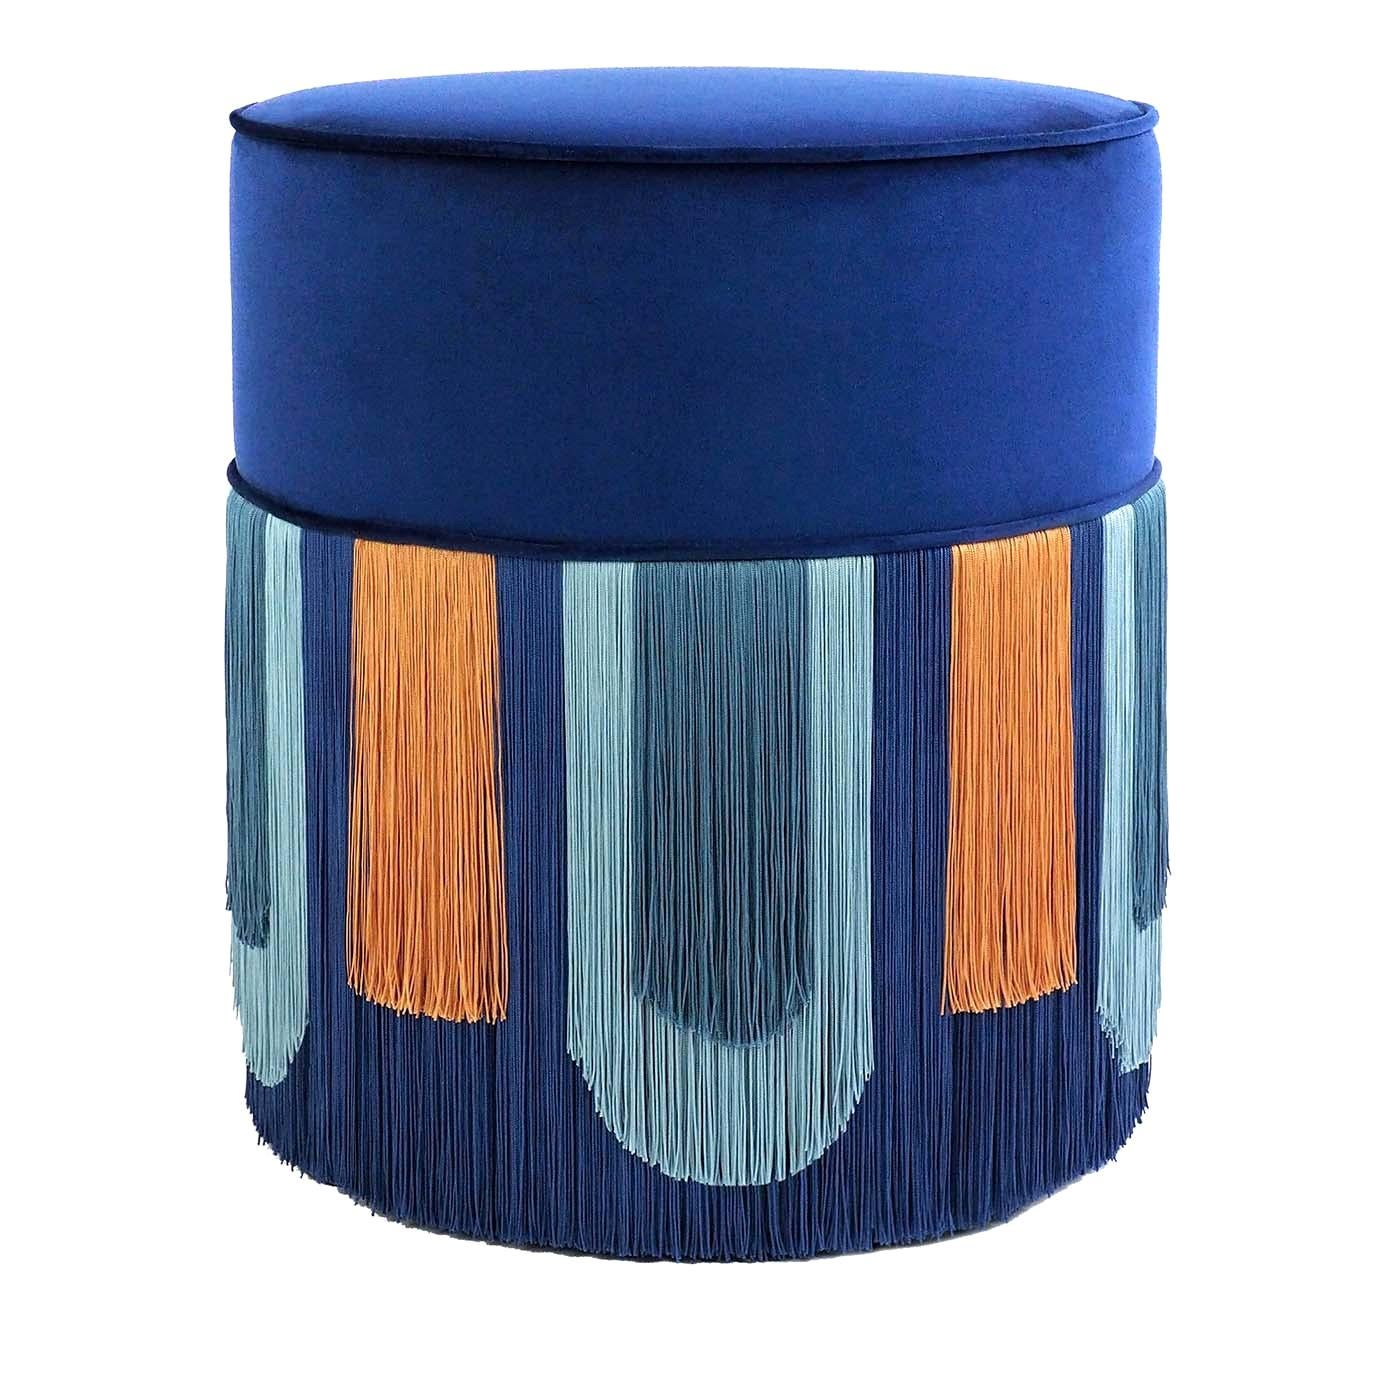 Couture Blauer Deko-Pouf mit geometrischem Muster